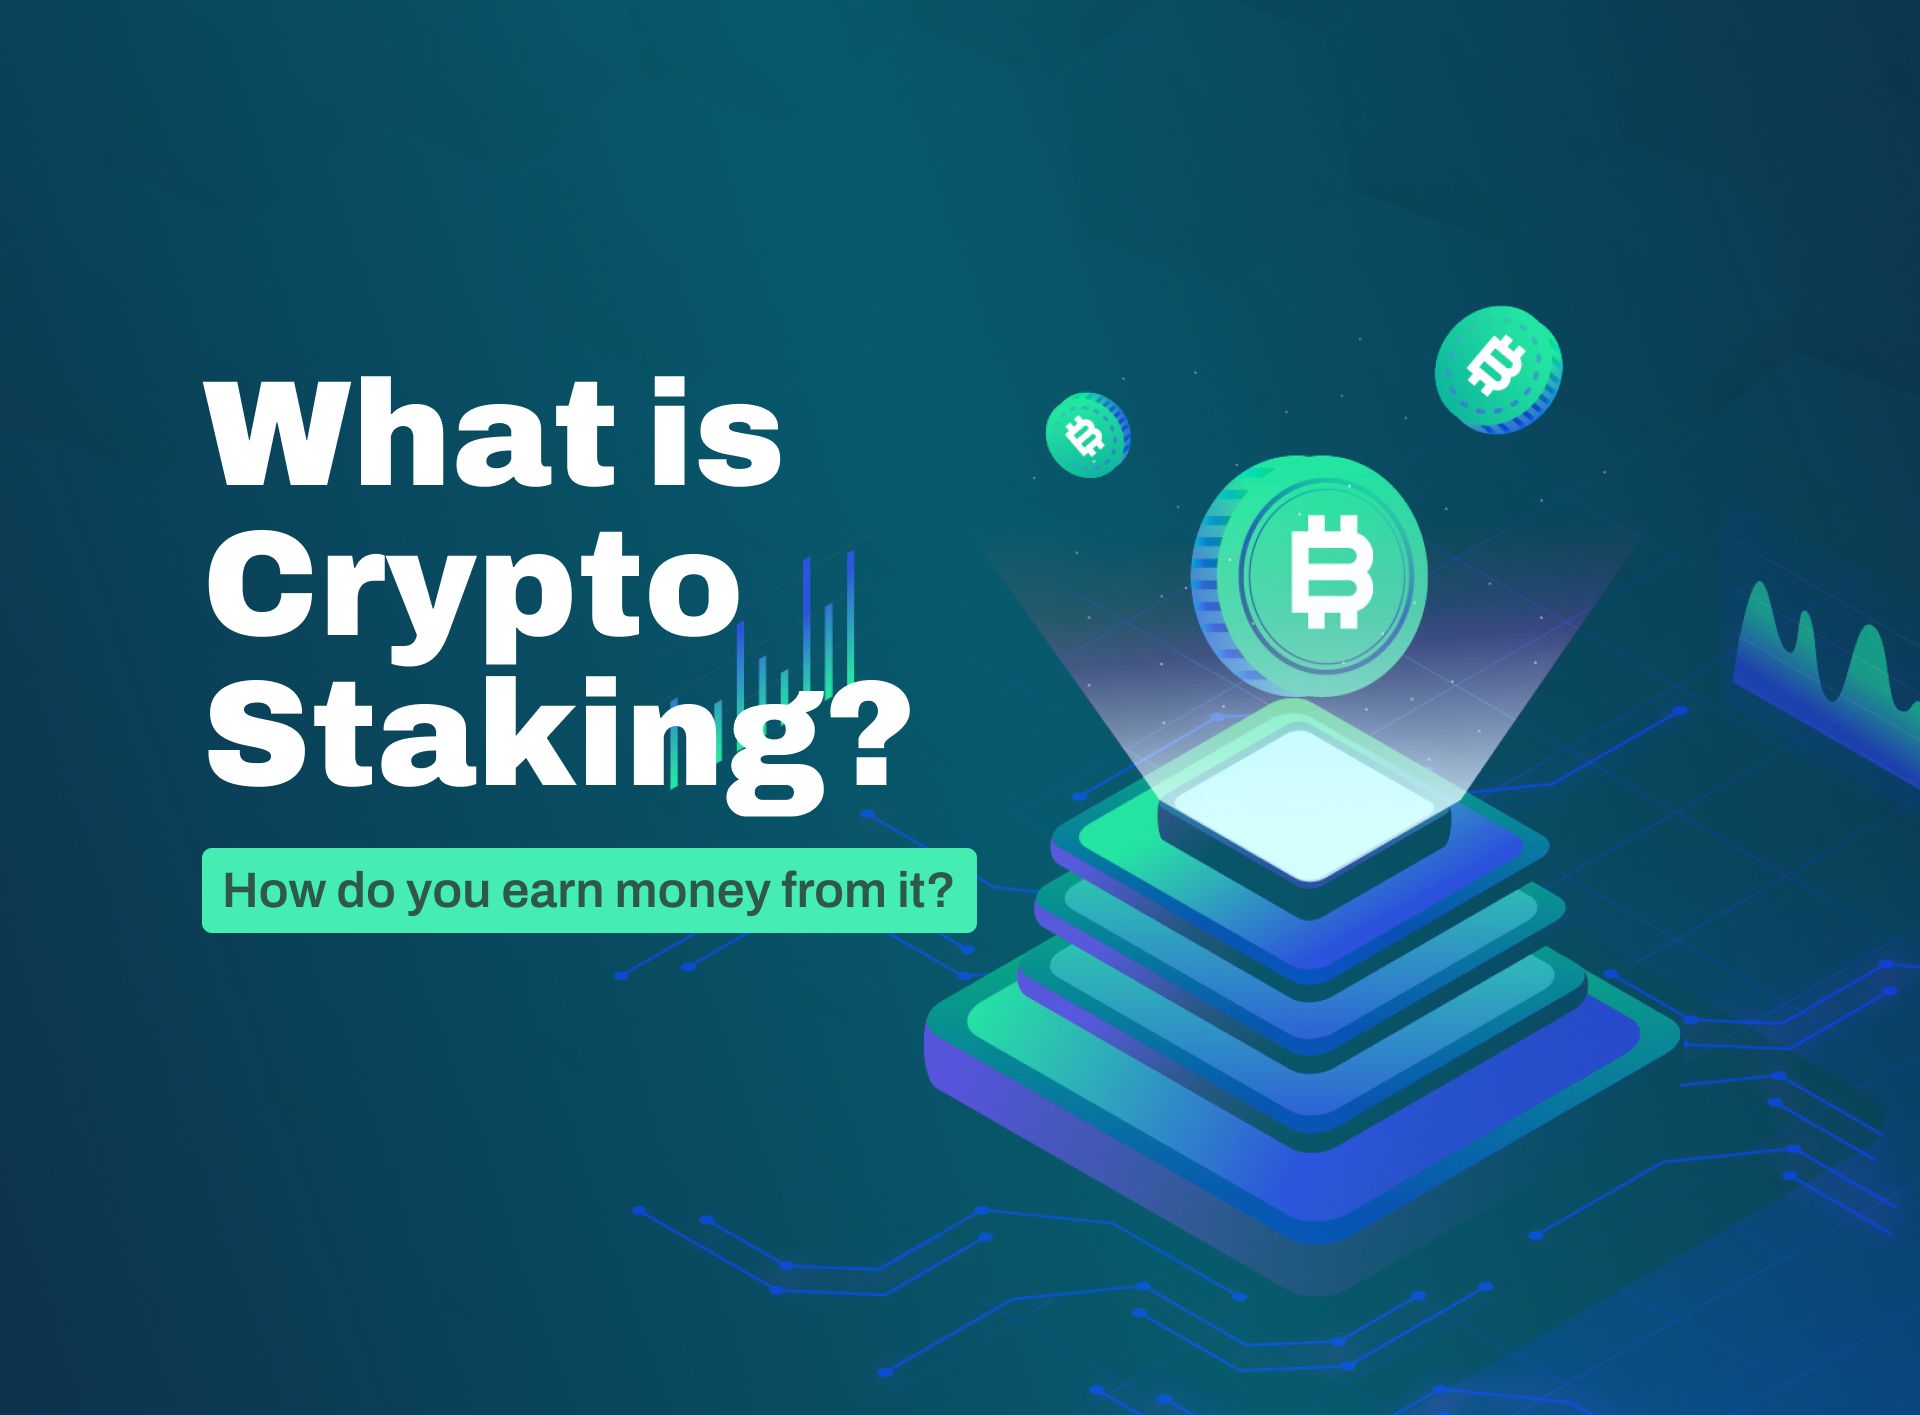 how to stake crypto on crypto.com